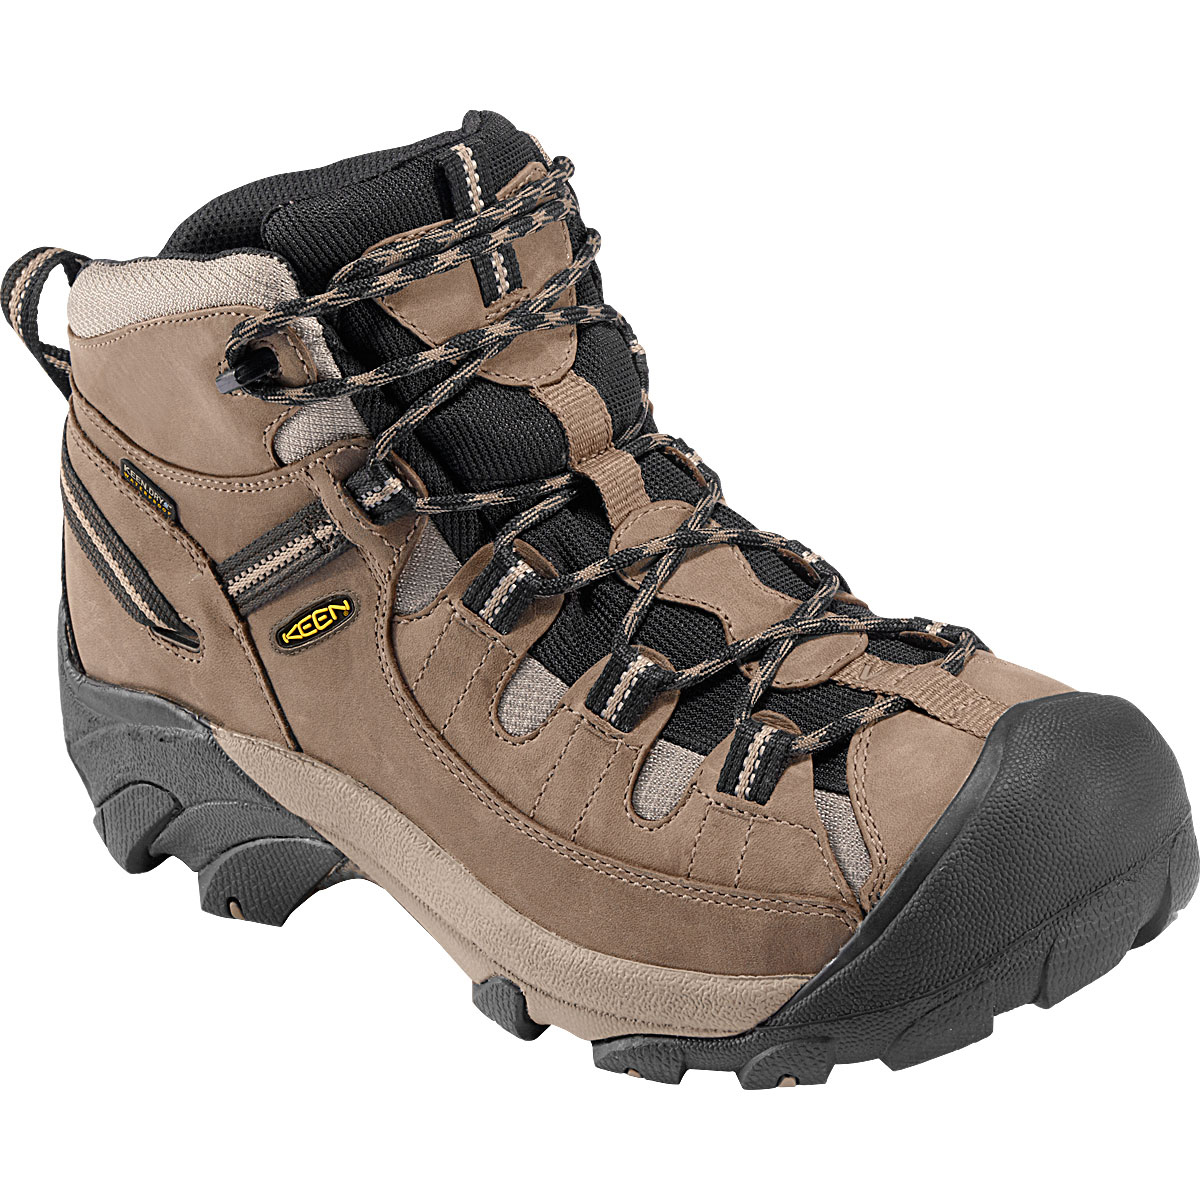 Keen Men's Targhee Ii Hiking Boots, Wide - Size 14